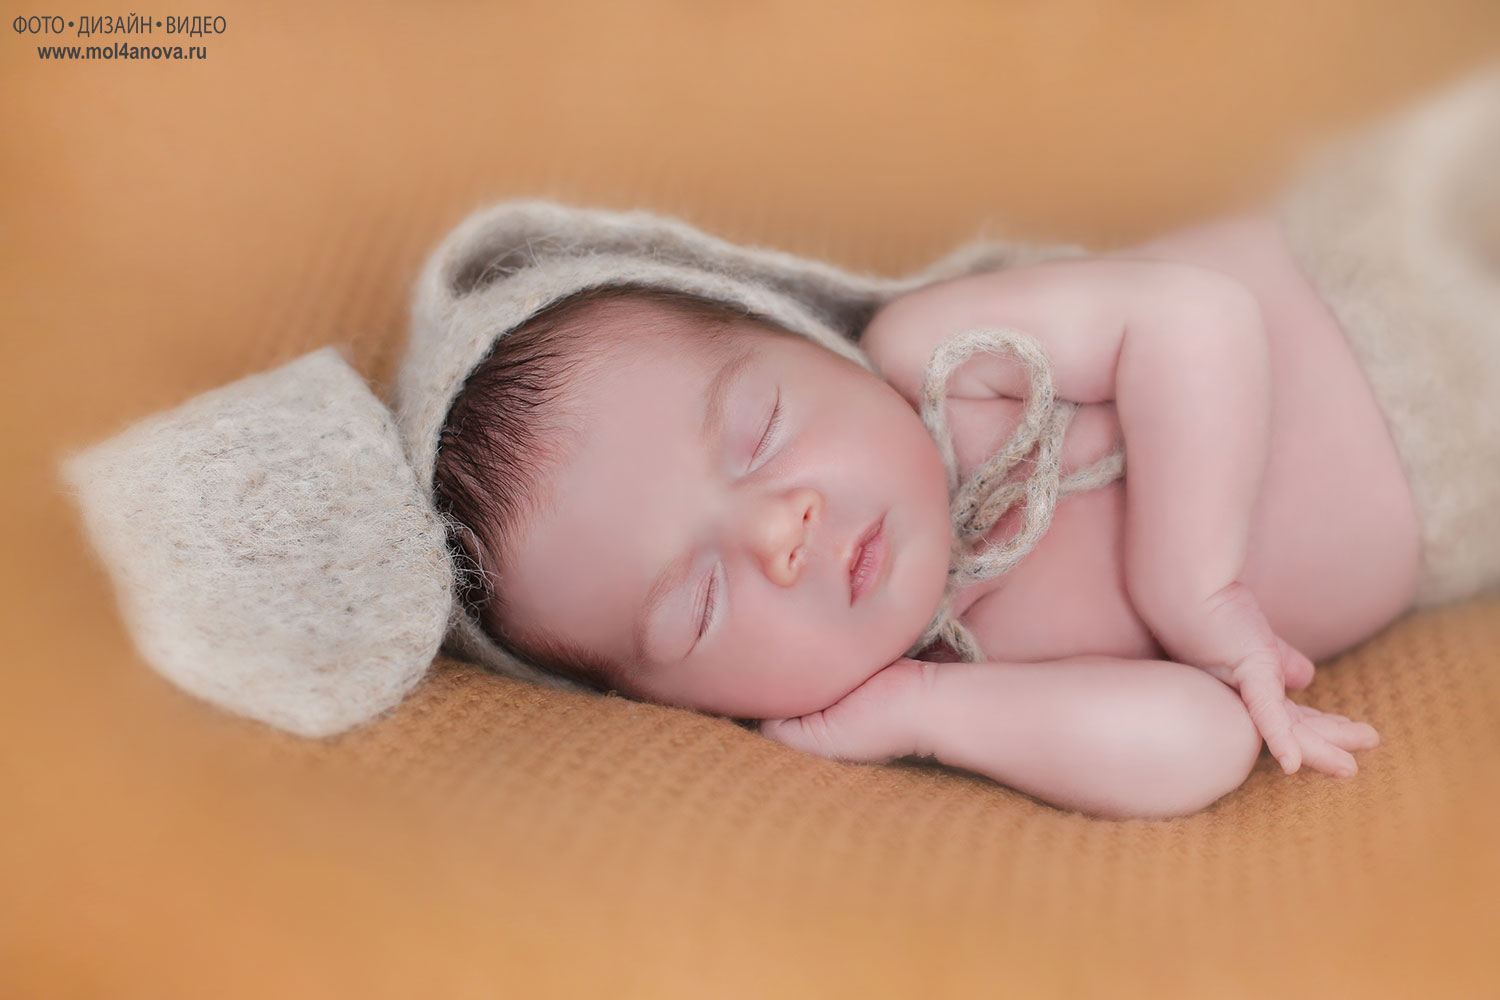 Студия для новорождённых, newborn foto, где сфотографировать новорождённого малыша, фотосессия для новорождённого мальчика, 
фотограф новорождённых, фотограф новорождённого.